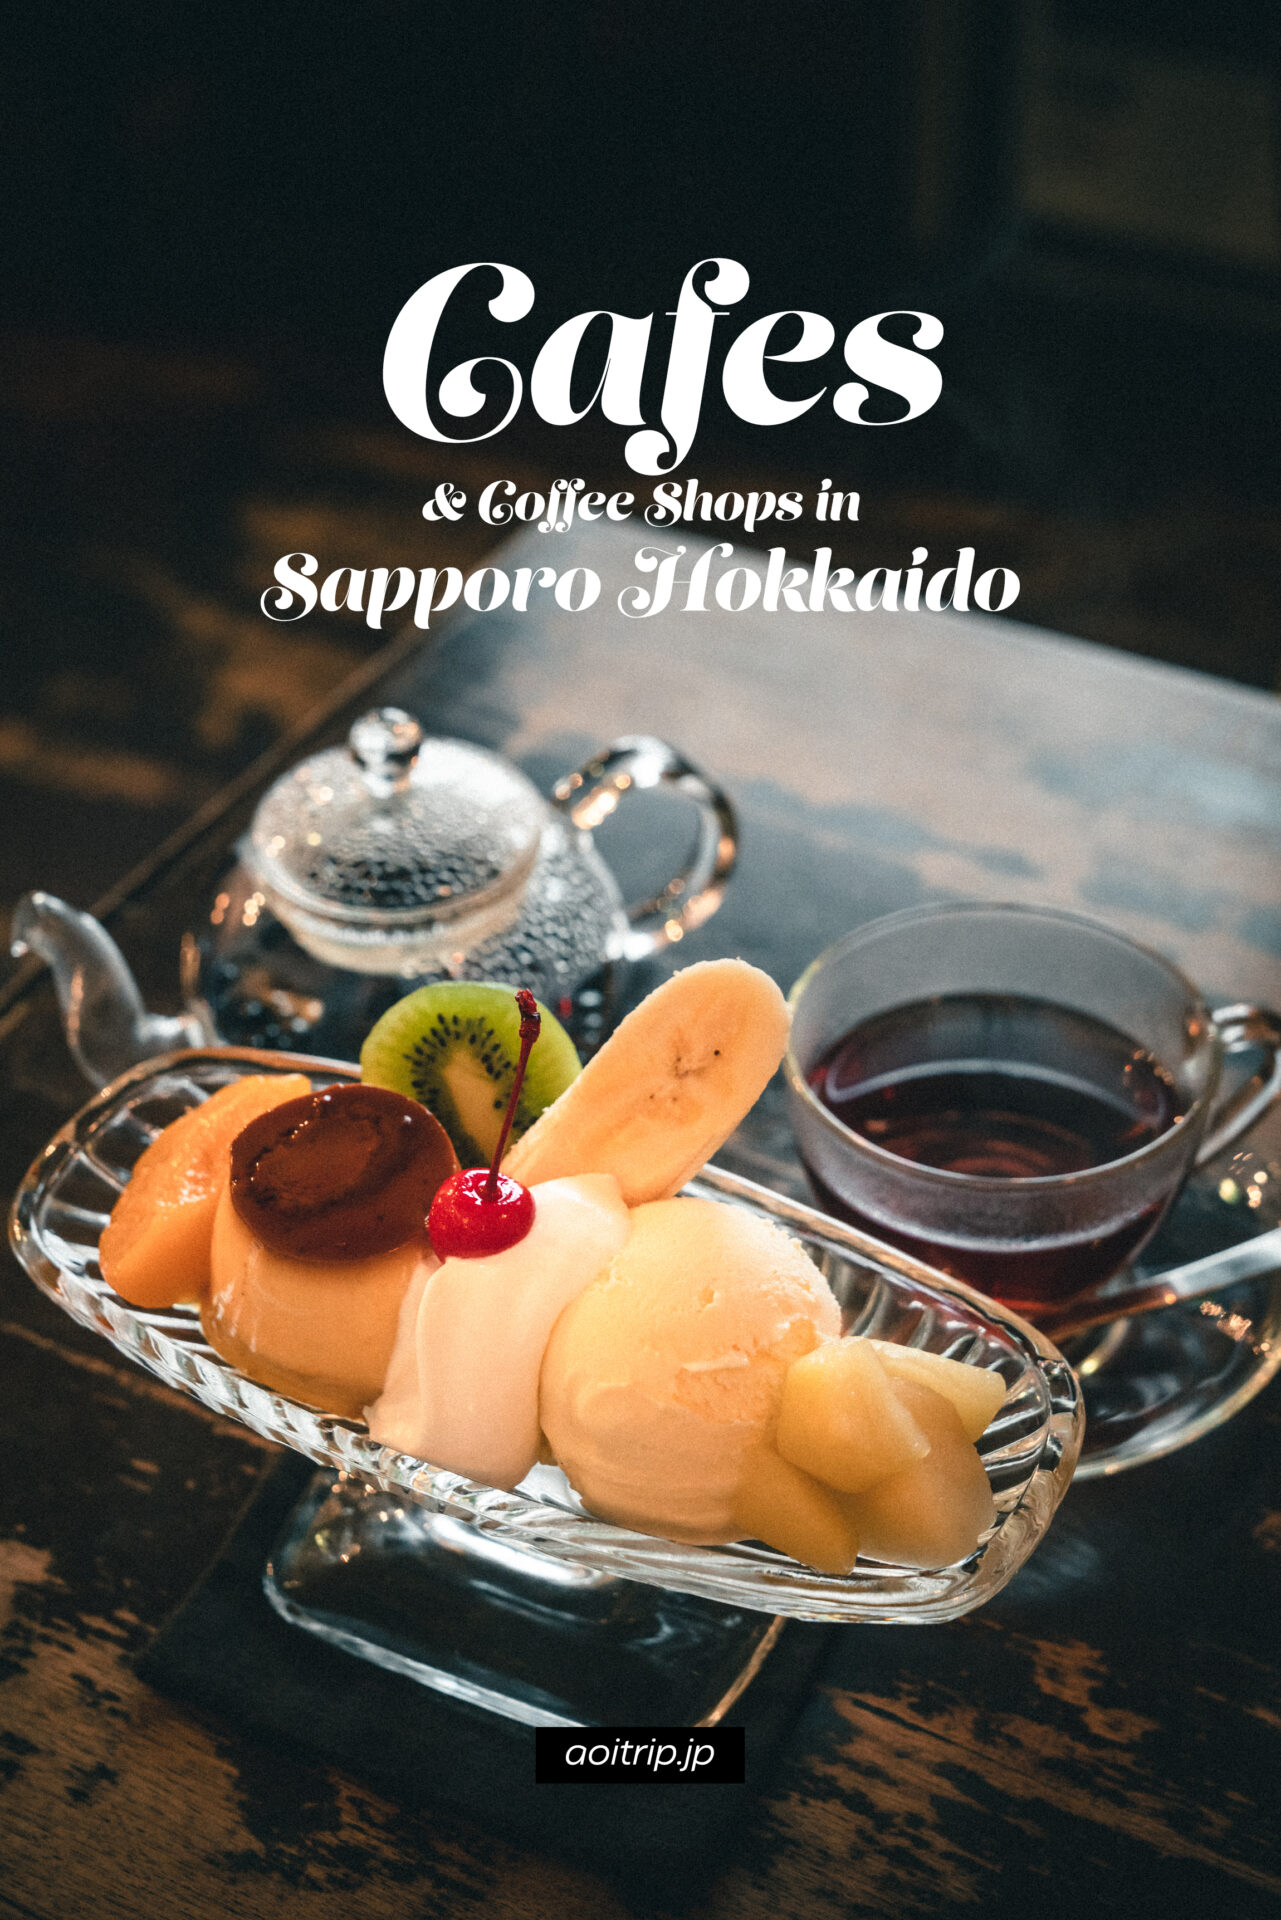 北海道 札幌旅行で訪れたカフェ・喫茶店 Cafes & Coffee Shops in Sapporo, Hokkaido